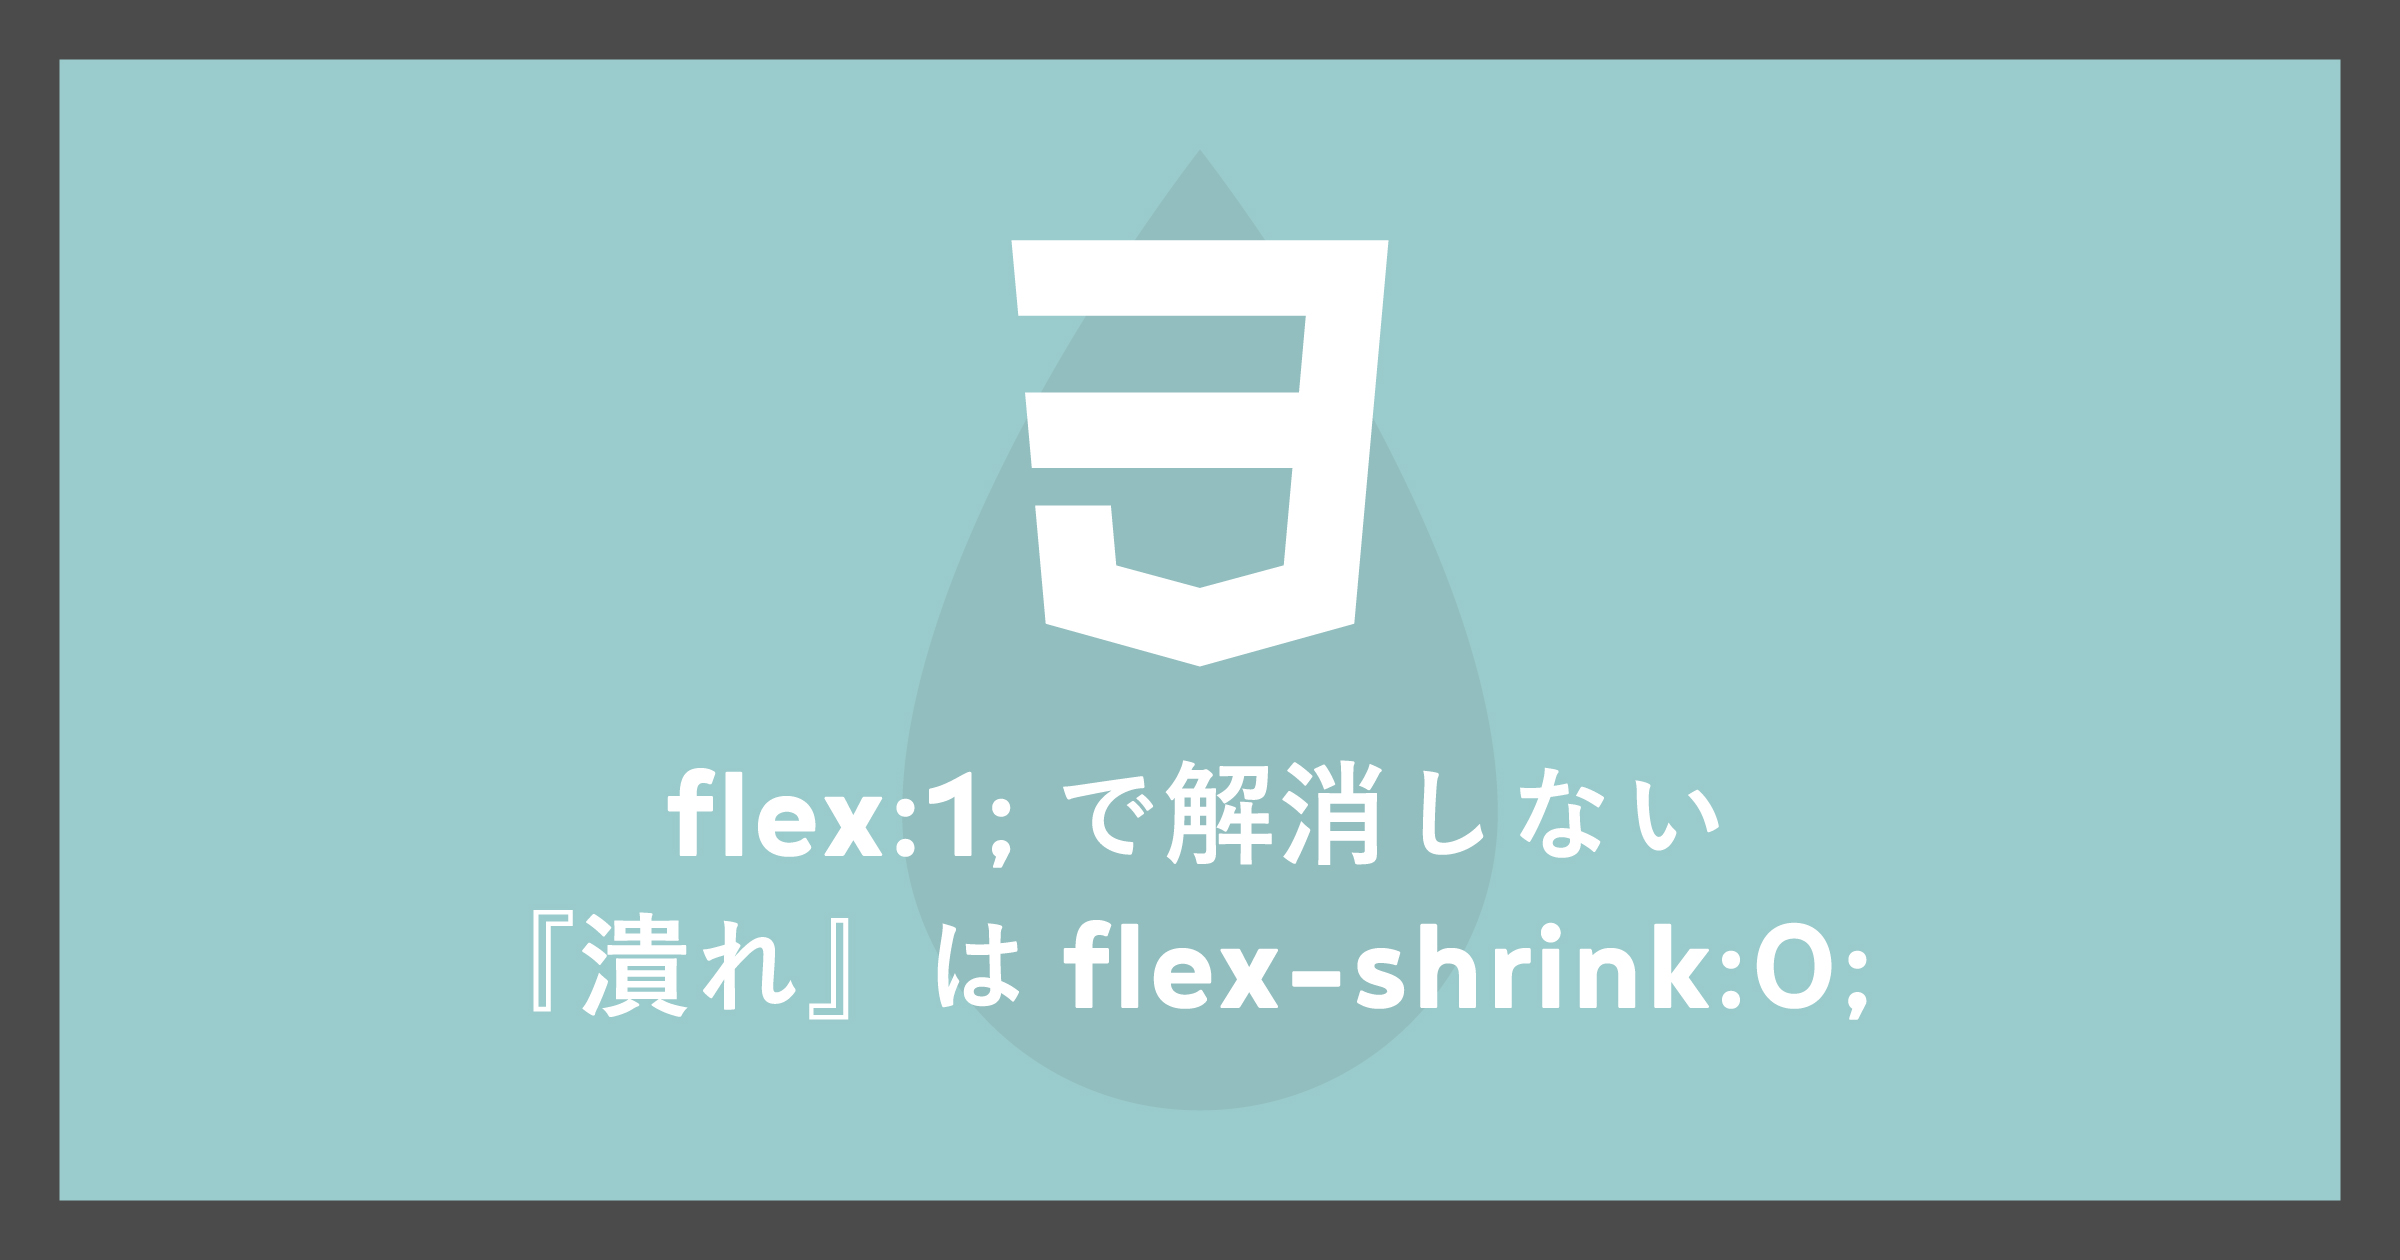 「flex:1;で解消しない『潰れ』はflex-shrink:0;」のアイキャッチ画像